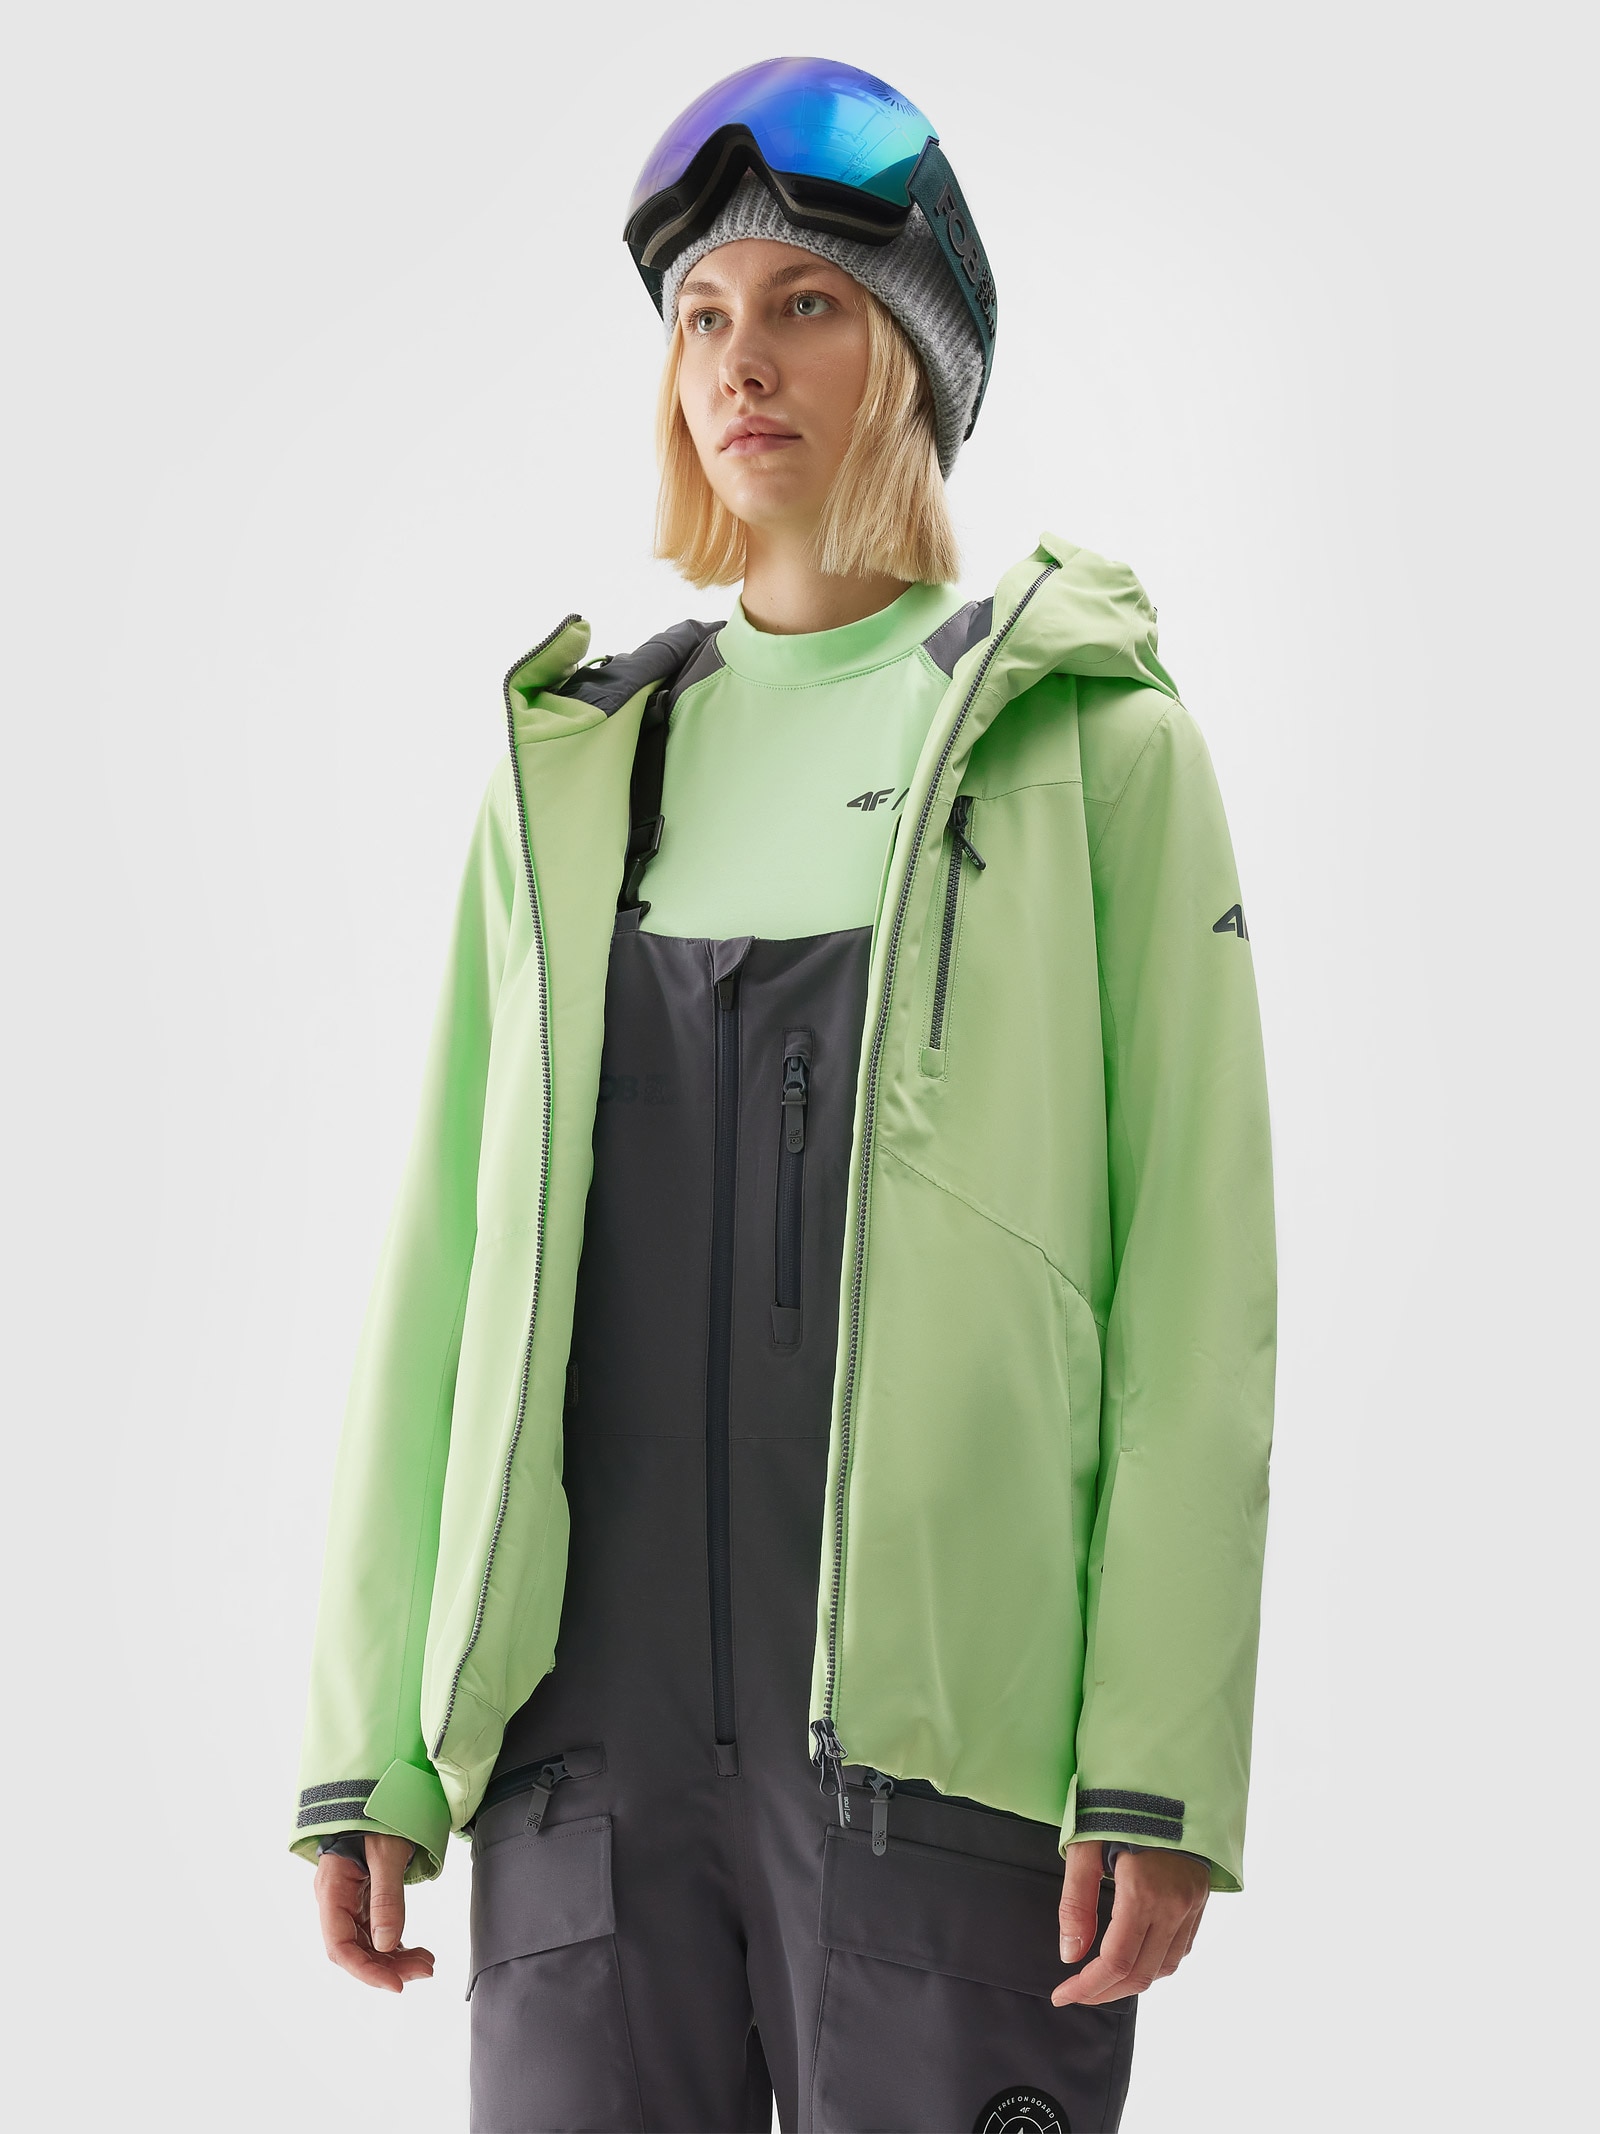 Dámska snowboardová bunda s membránou 10000 - zelená